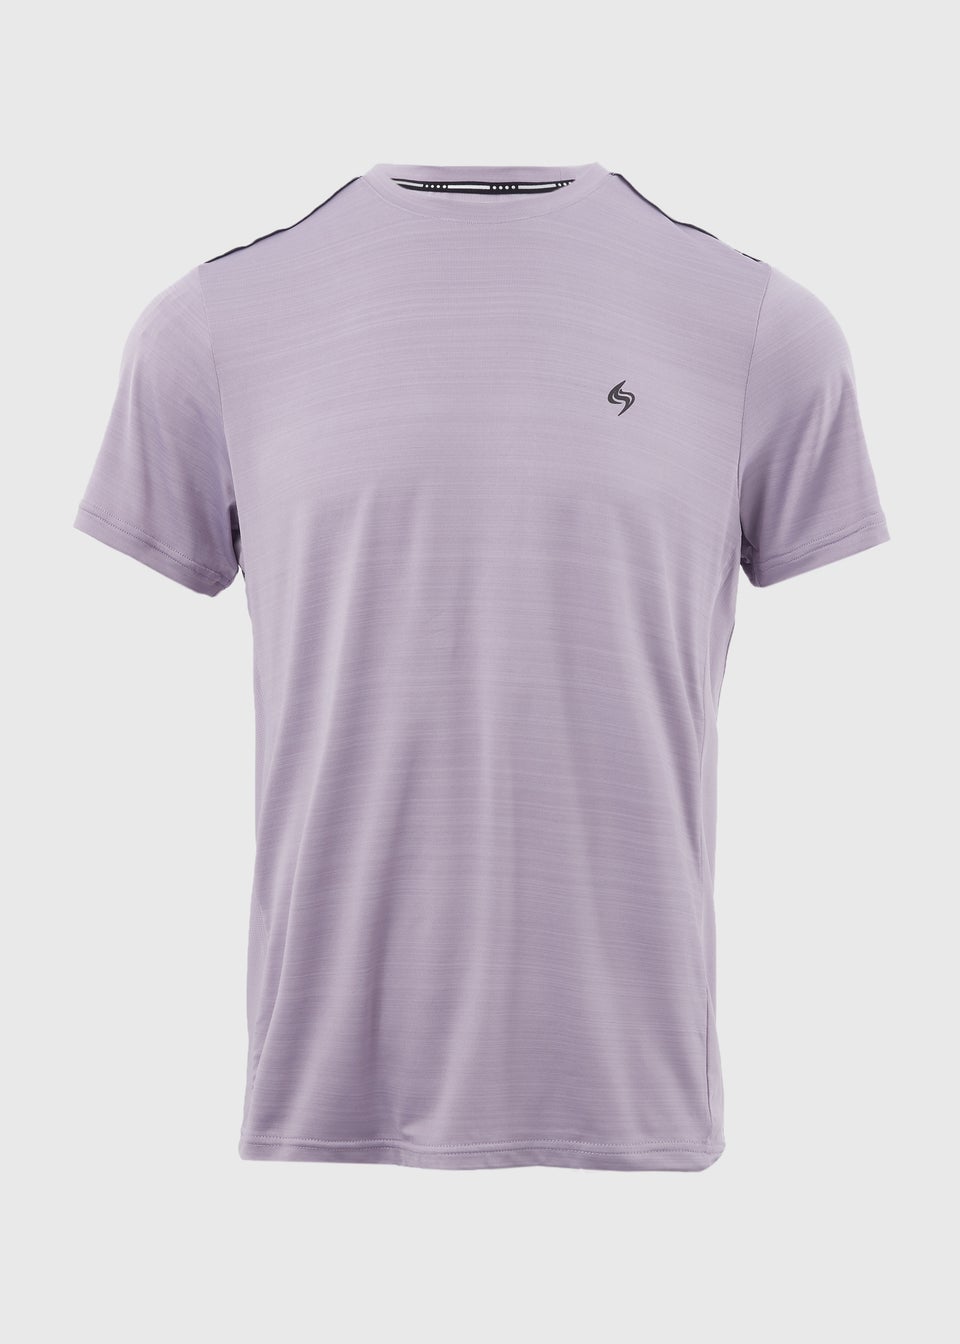 Souluxe Lilac Space Dye Woven T-Shirt